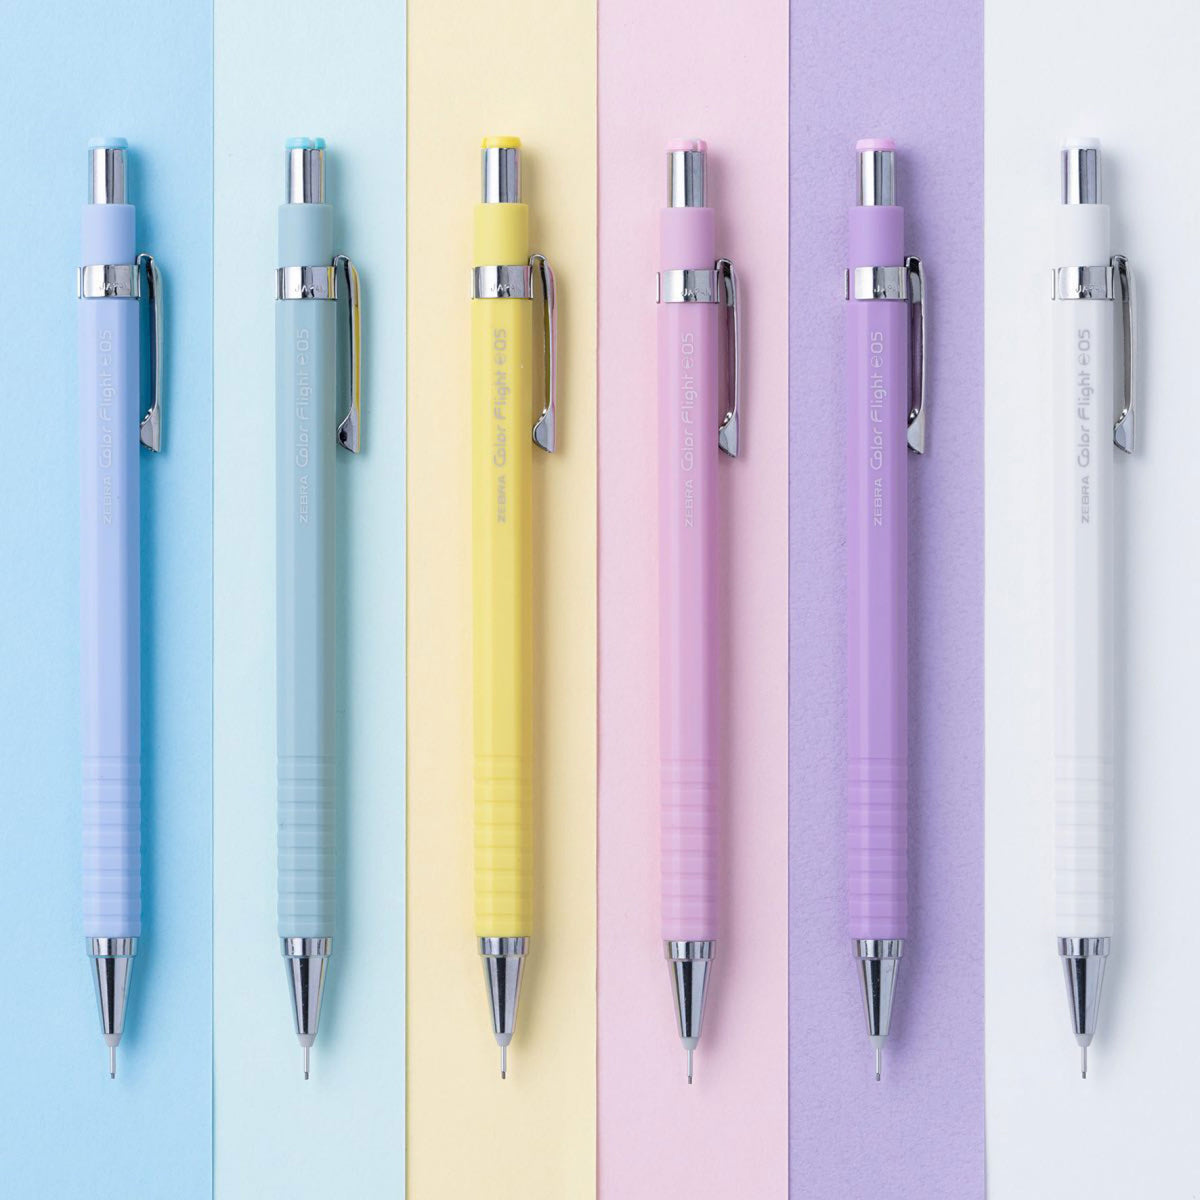 Zebra - Mechanical Pencil - Color Flight Pastel - 0.3mm - White <Outgoing>